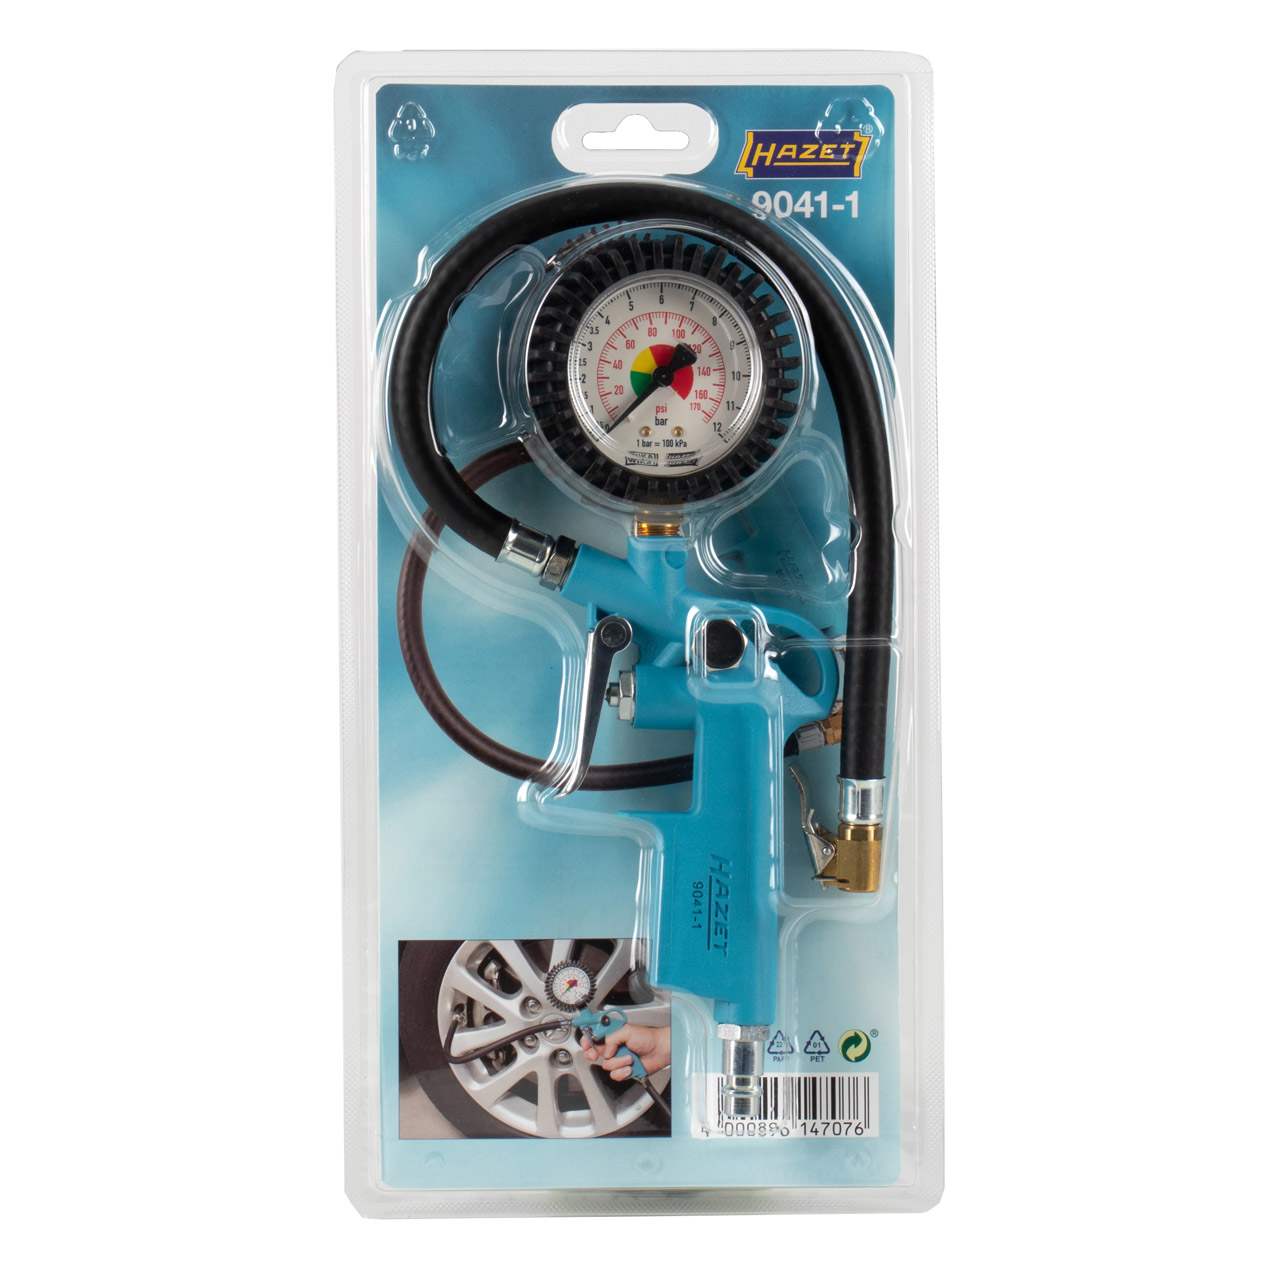 HAZET 9041-1 Reifenfüller Luftdruckprüfer Reifendruck Manometer PKW Motorrad bis 12 Bar